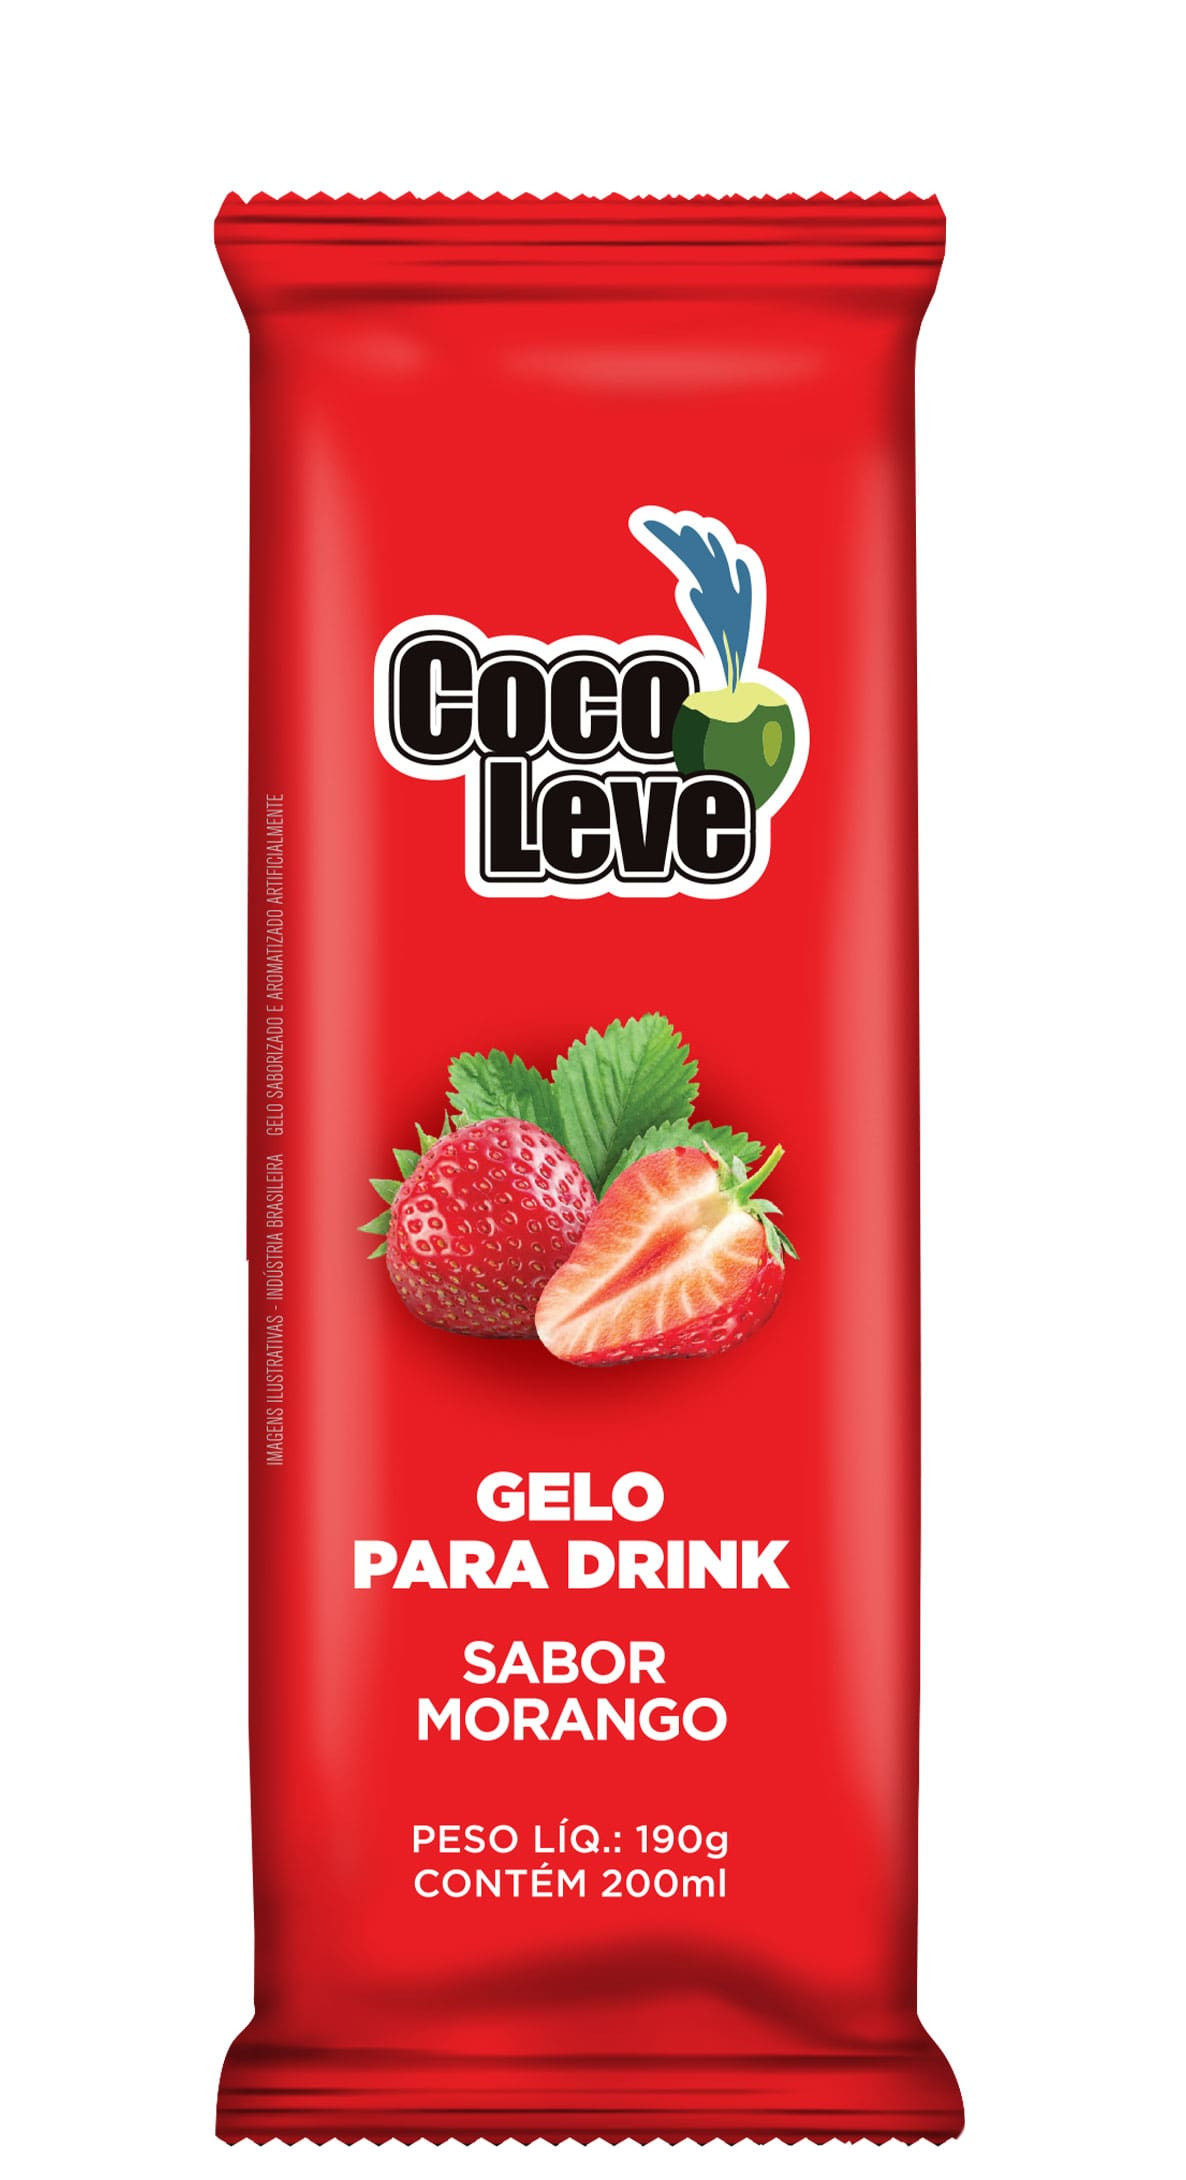 Gelo de Côco – Mais sabor para os seus drinks!